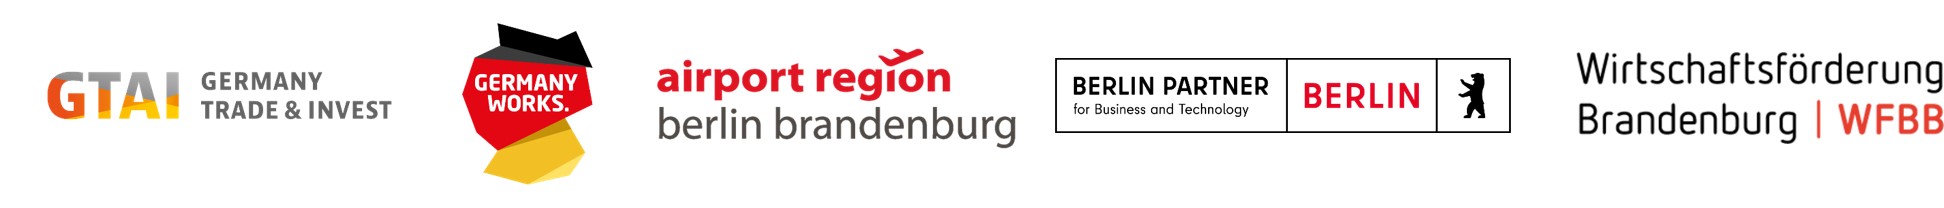 Partnerlogos: GTAI + GermanyWorks. + airport region berlin brandenburg + Berlin Partner + Wirtschaftsförderung Brandenburg